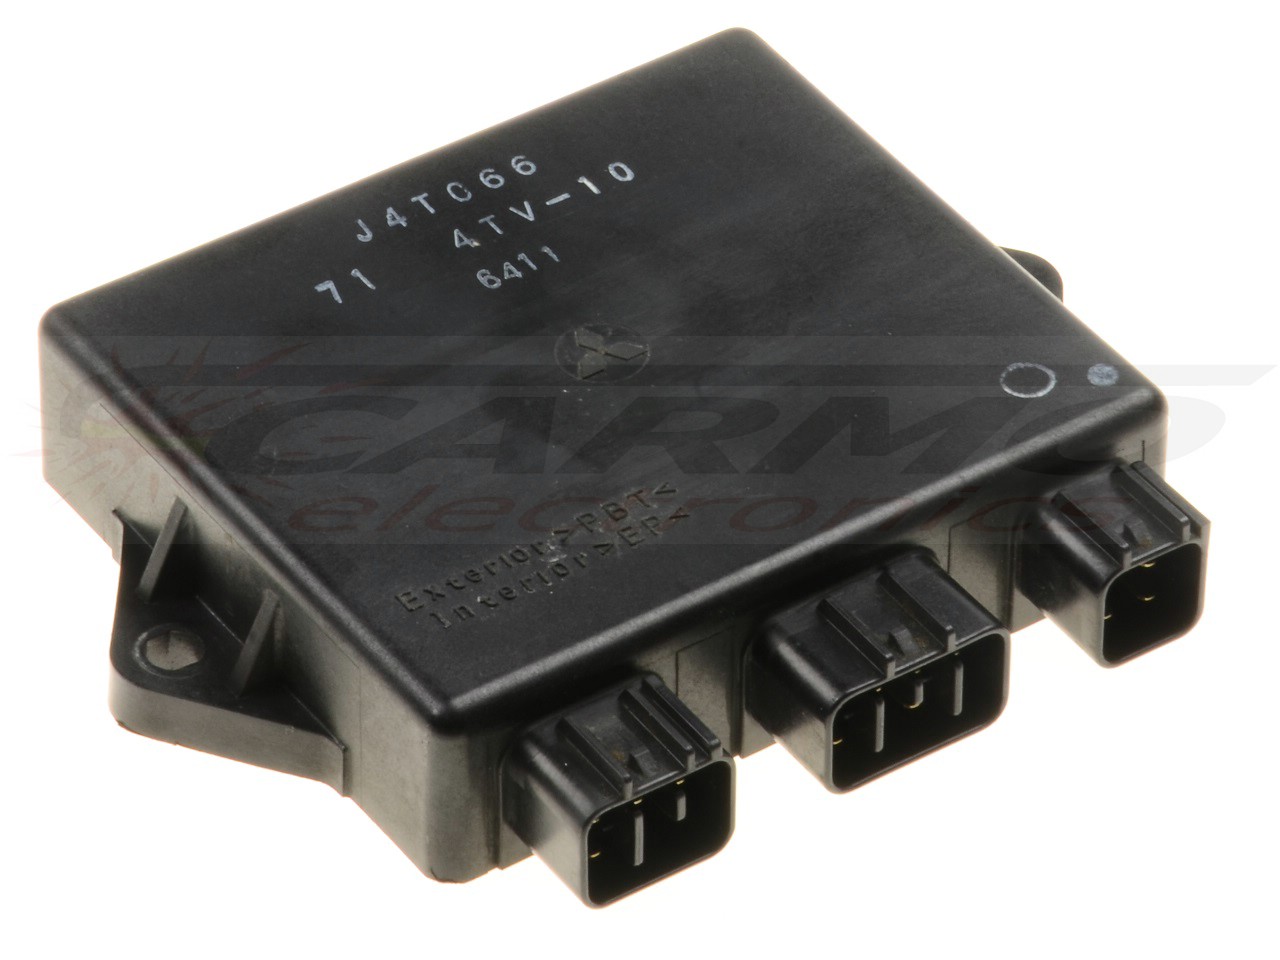 YZF600 Thundercat TCI CDI dispositif de commande boîte noire (J4T066, 71 4TV-10)